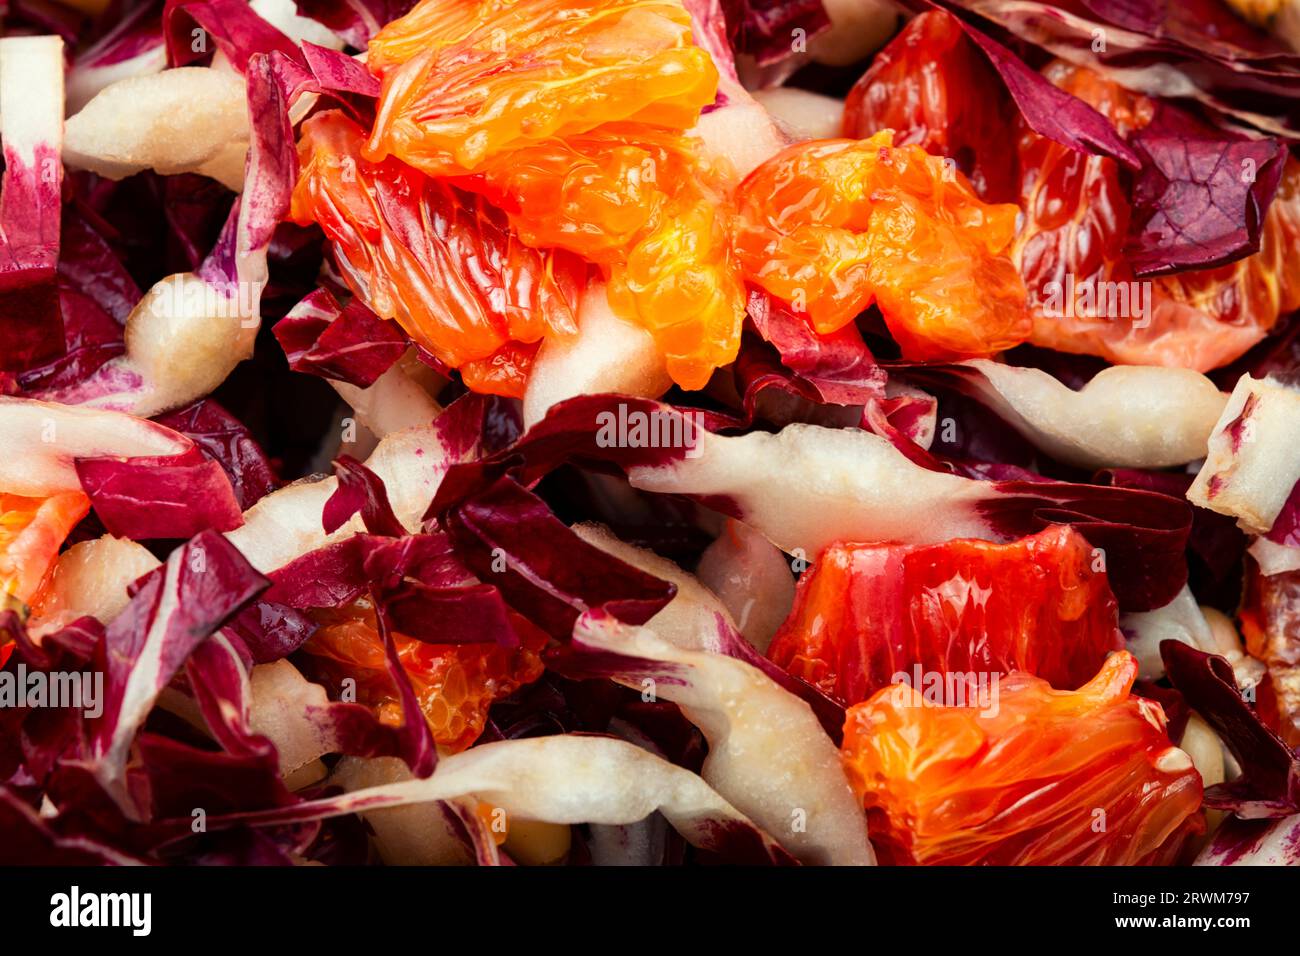 Salade de légumes avec chicorée rouge, pamplemousse et pignons de pin sur une assiette. La nourriture Banque D'Images